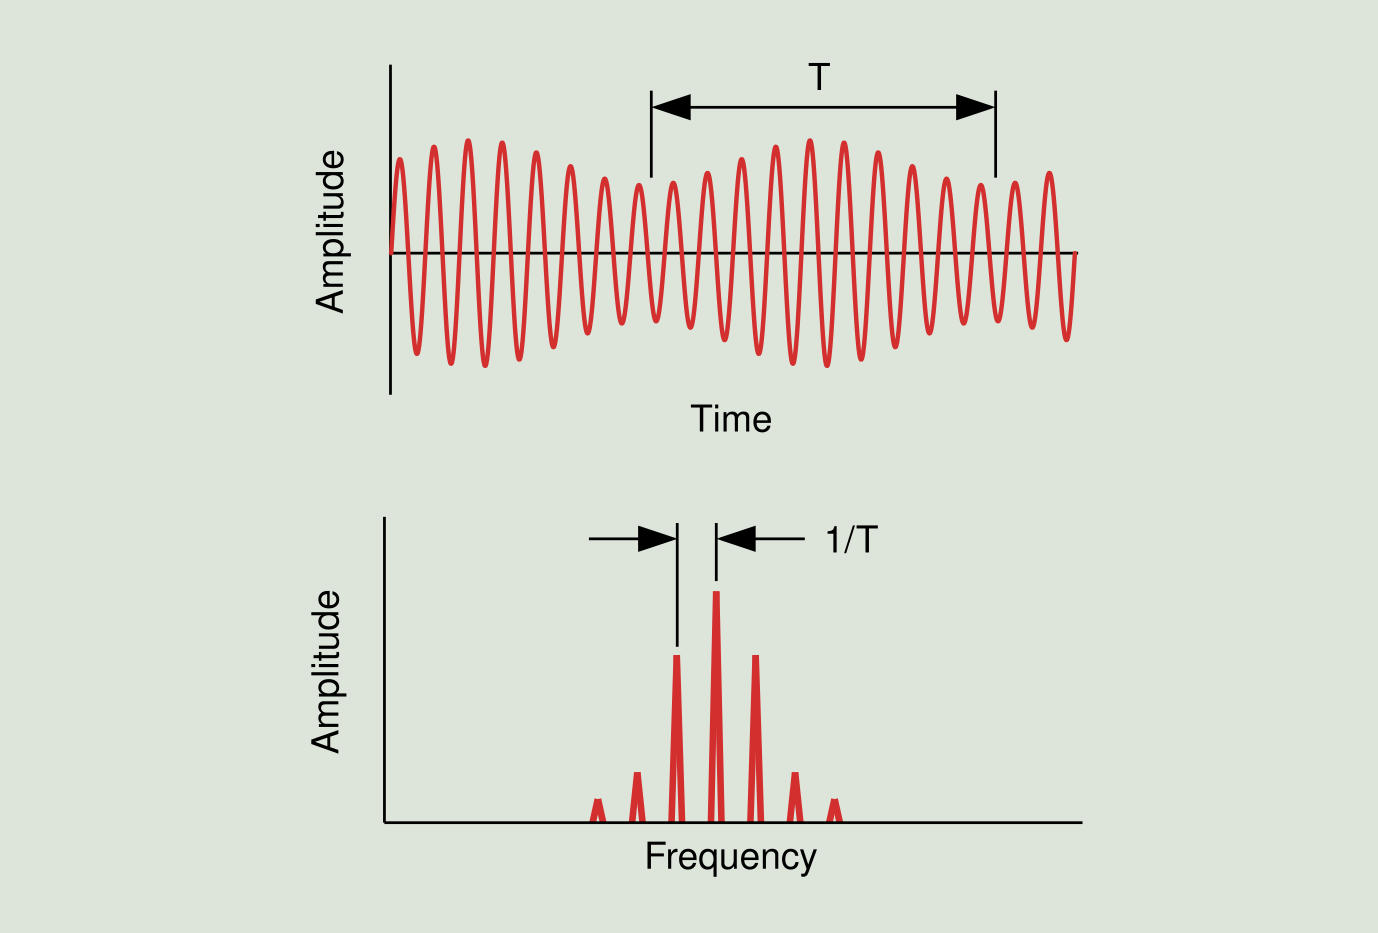 Figure 2.8: Amplitude modulation